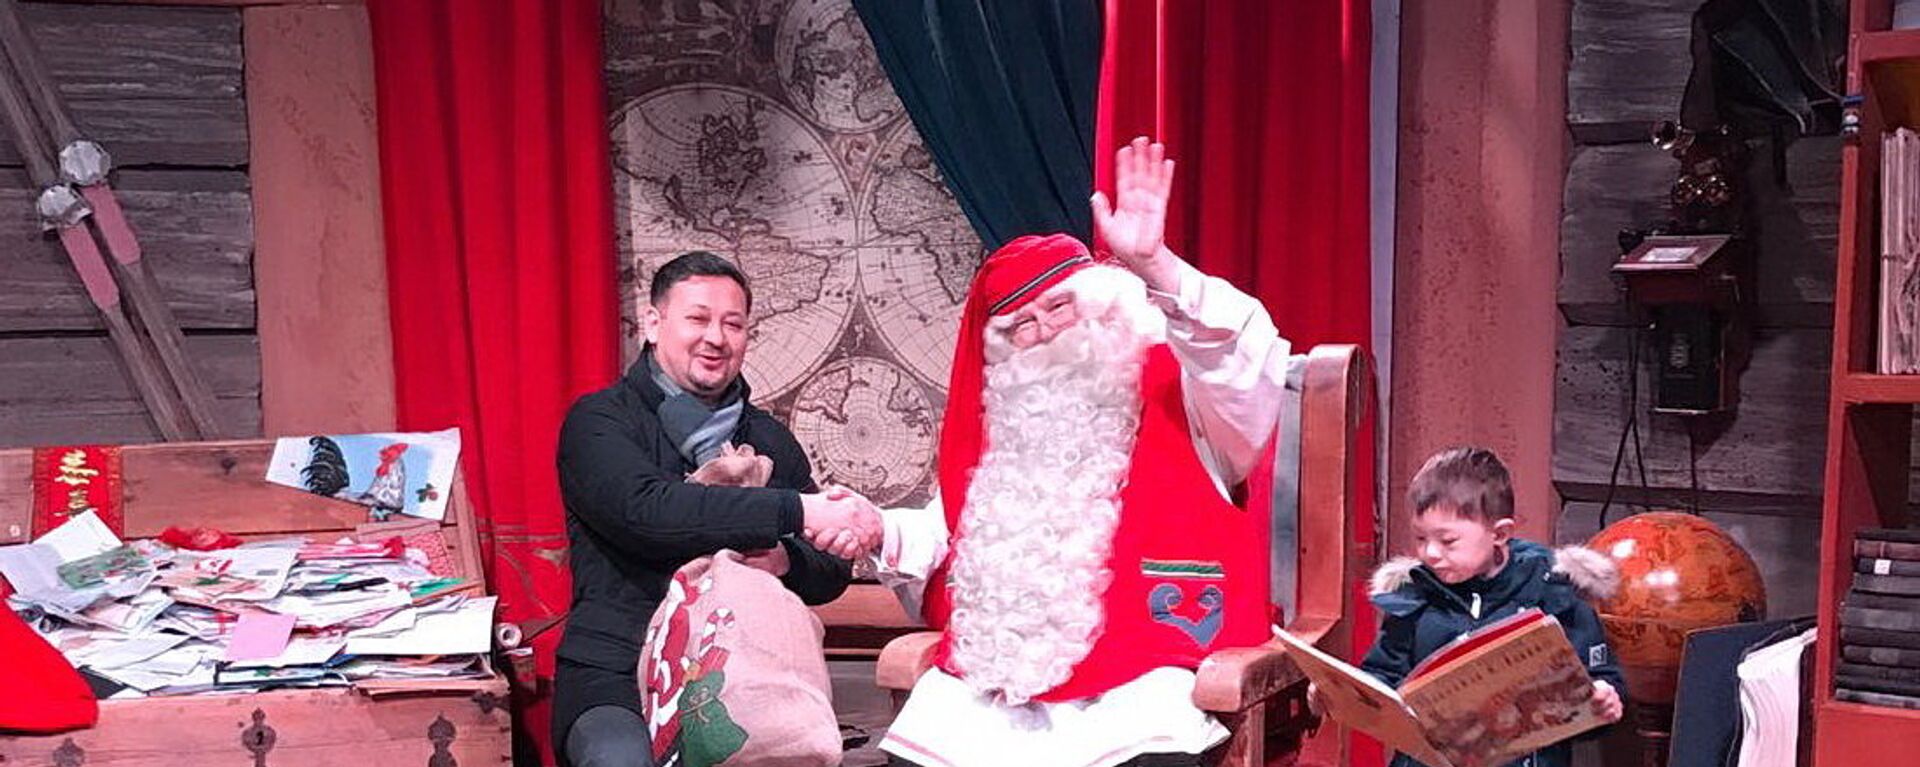 Финский Санта Клаус передал подарки казахстанским детям с синдромом Дауна - Sputnik Казахстан, 1920, 28.12.2016